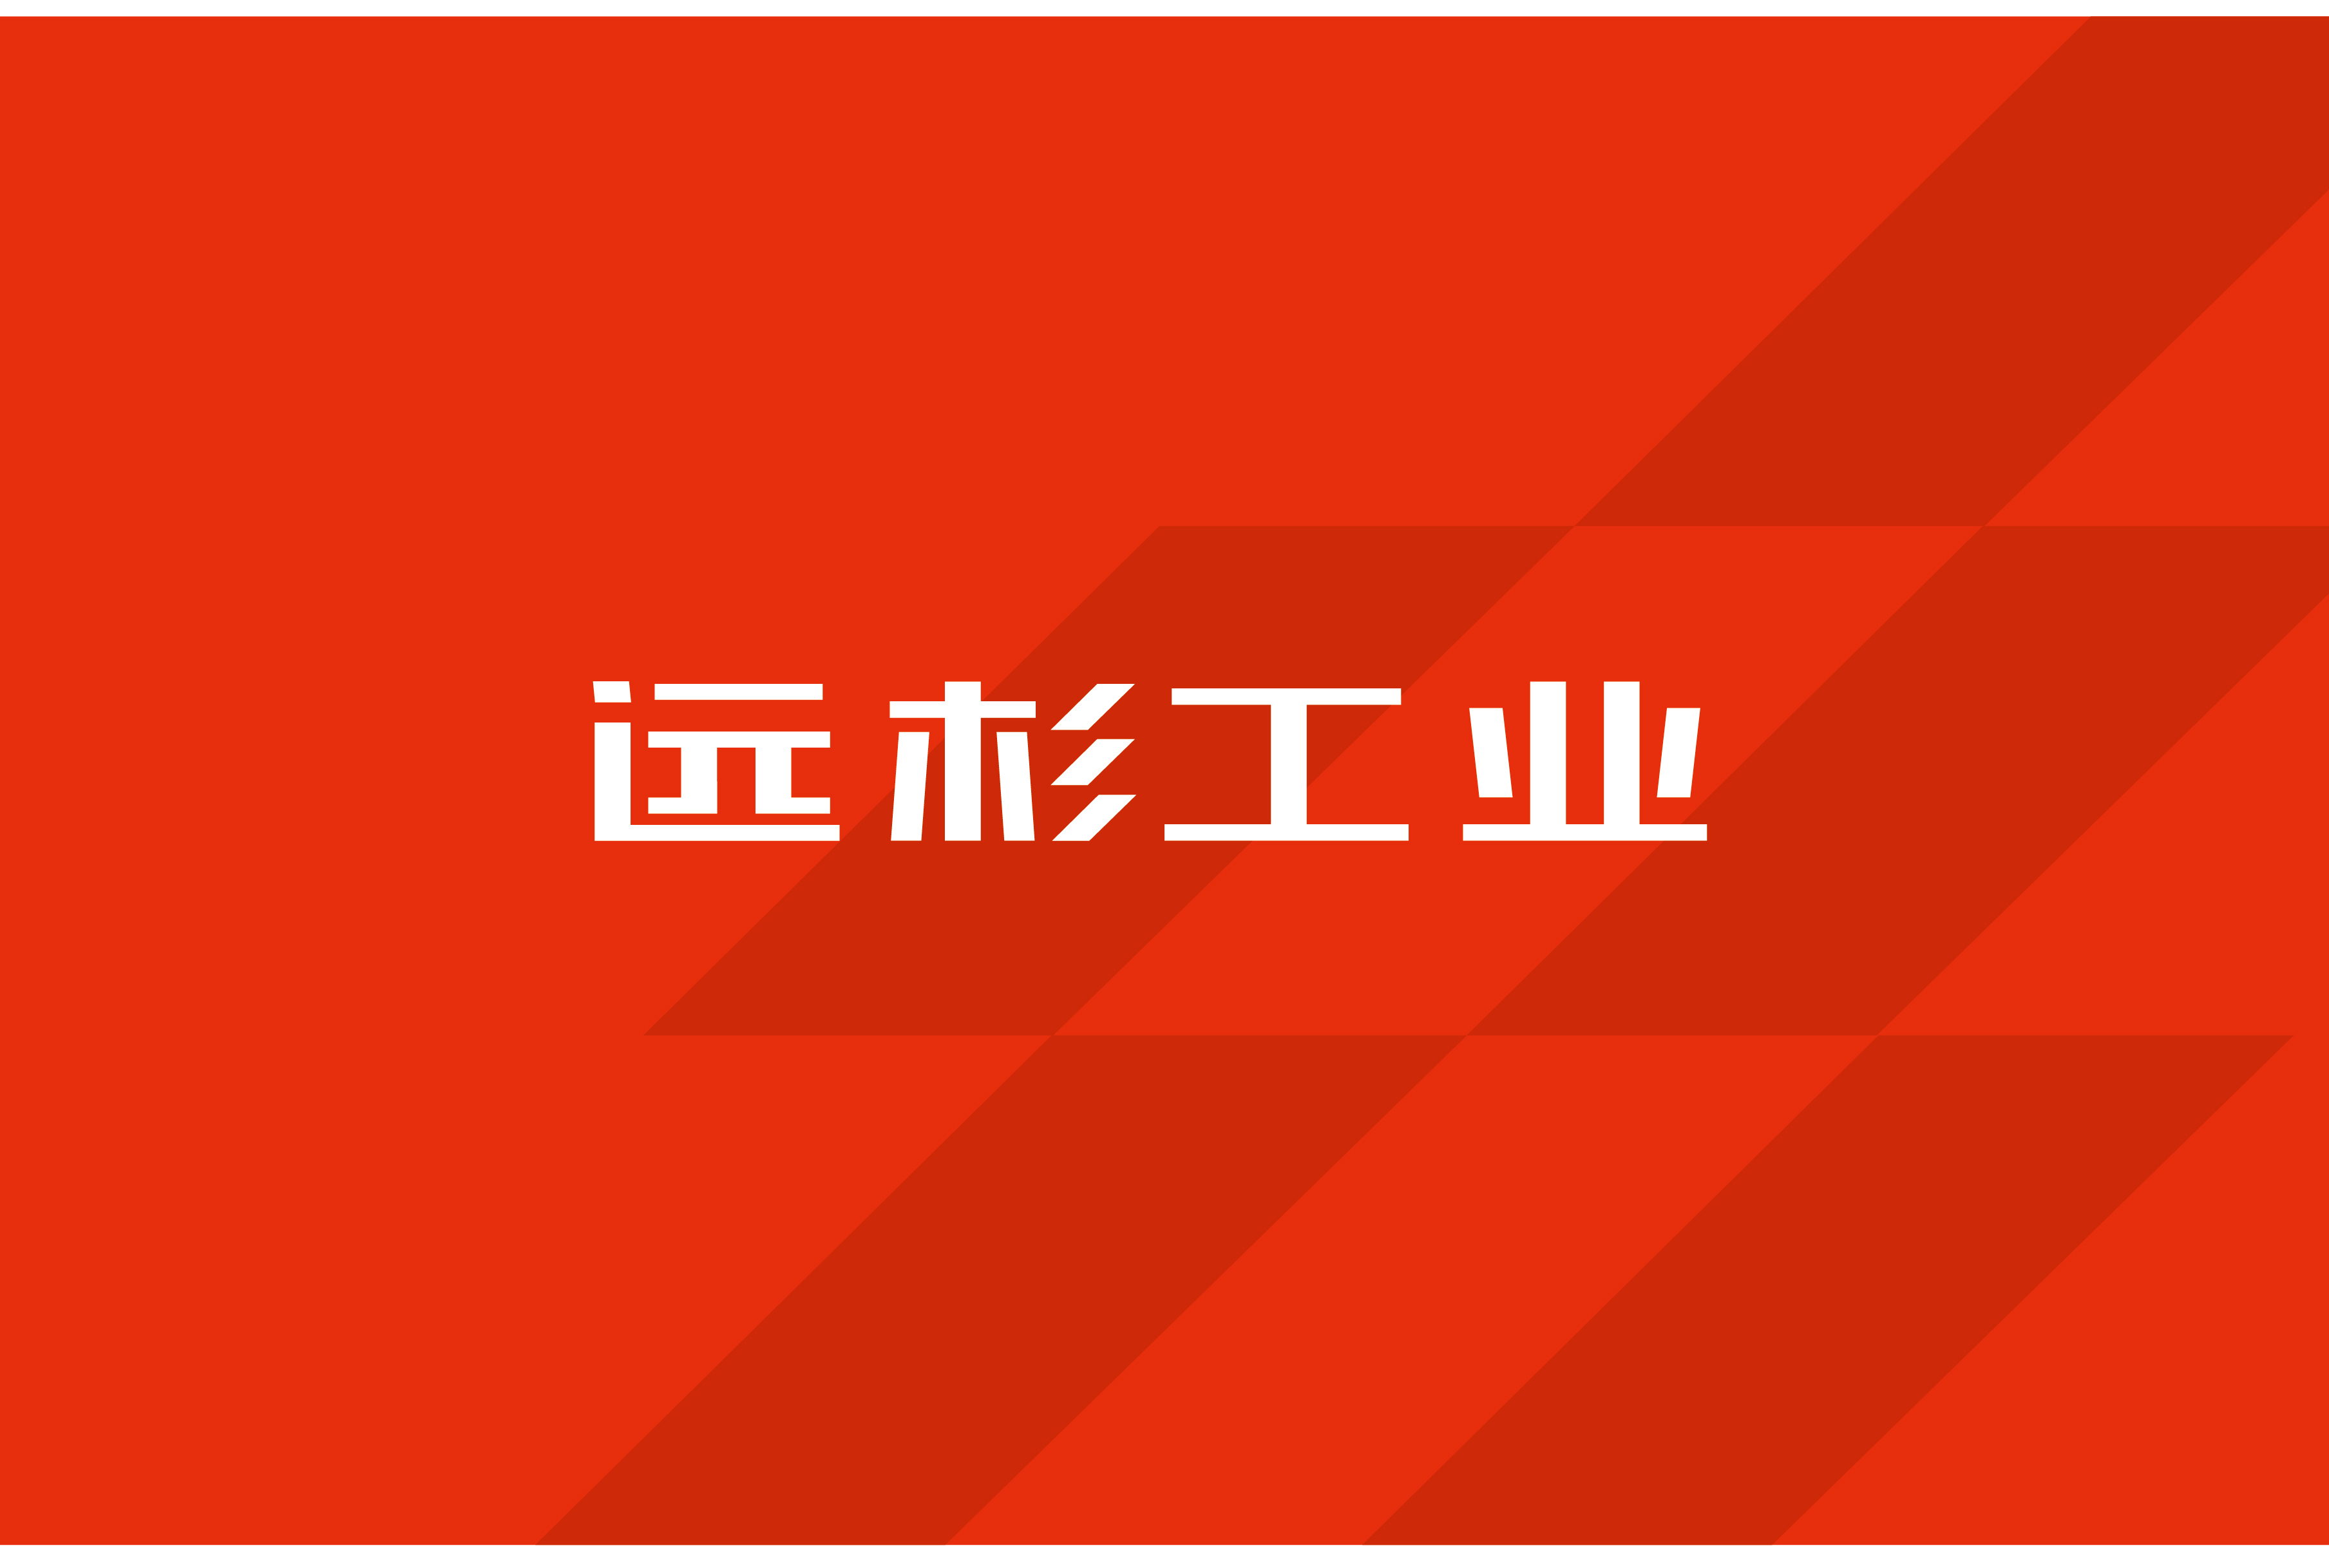 工业集团logo/vi设计